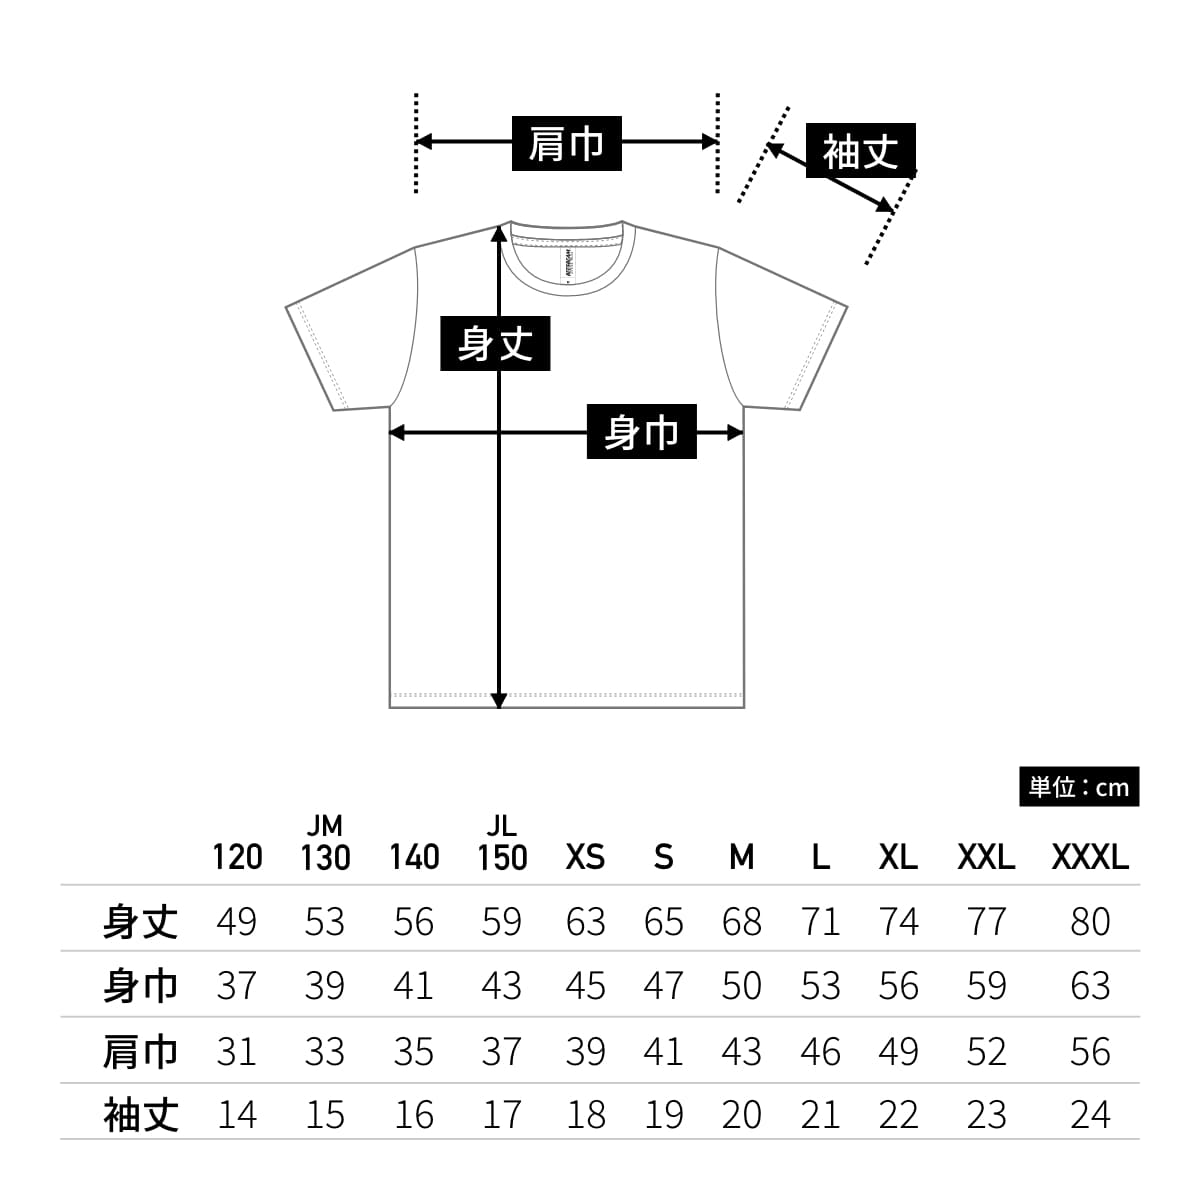 ファンクショナルドライTシャツ | メンズ | 1枚 | FDT-100 | ロイヤルブルー